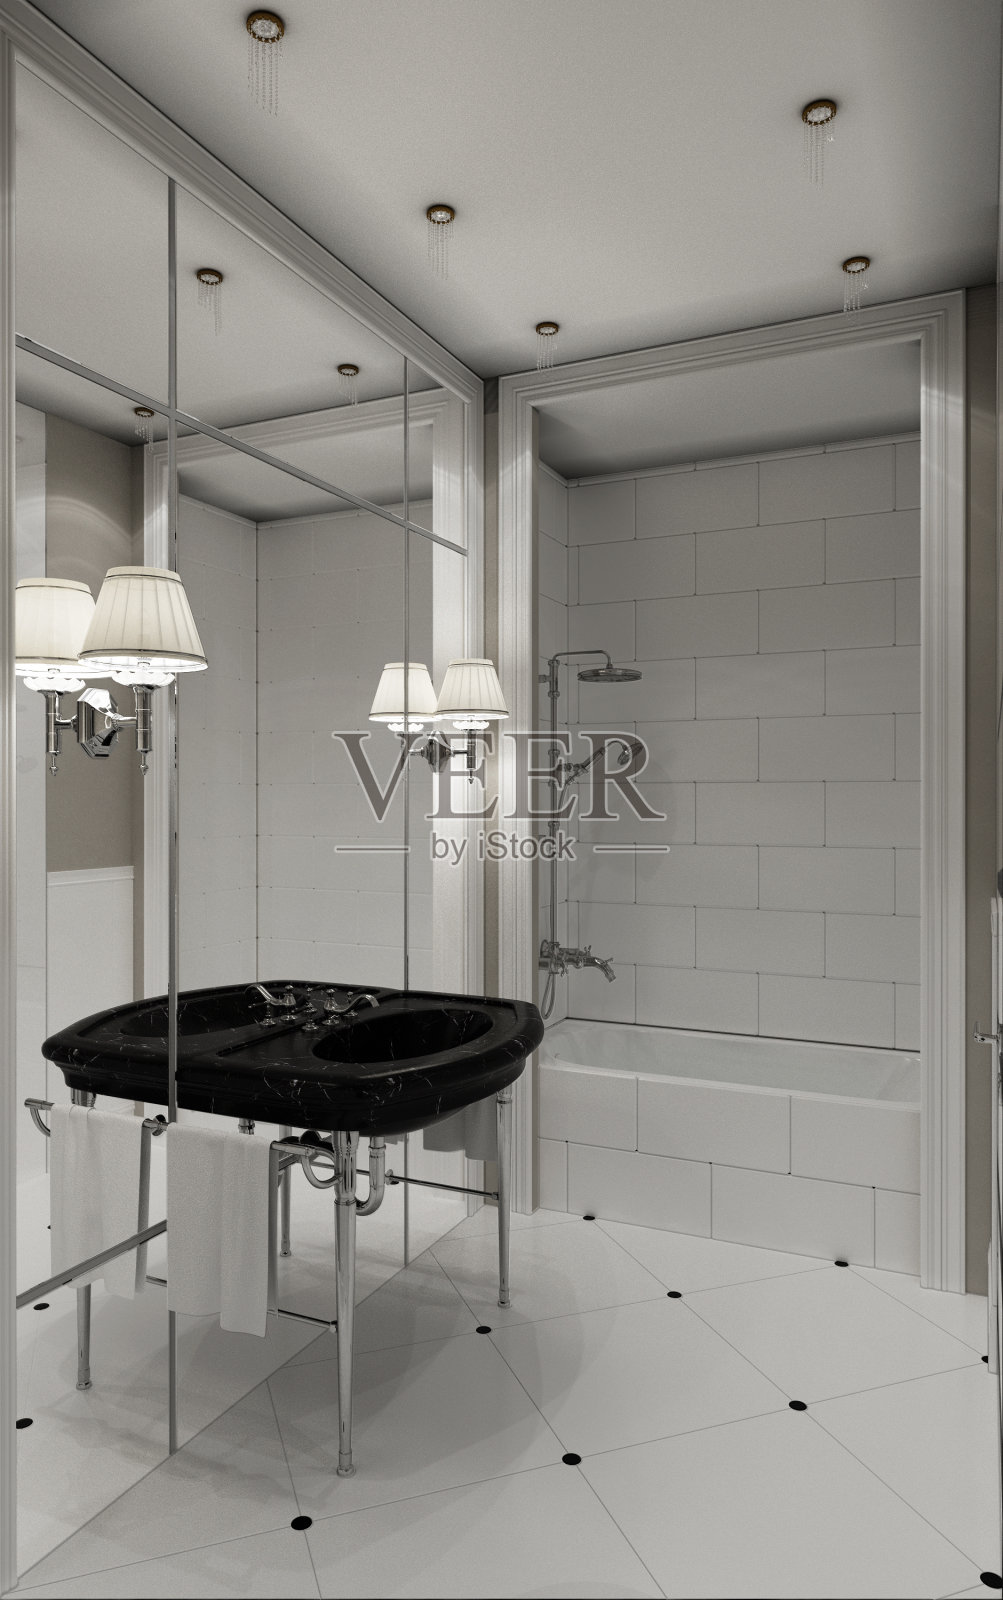 经典风格浴室设计的3D插图照片摄影图片